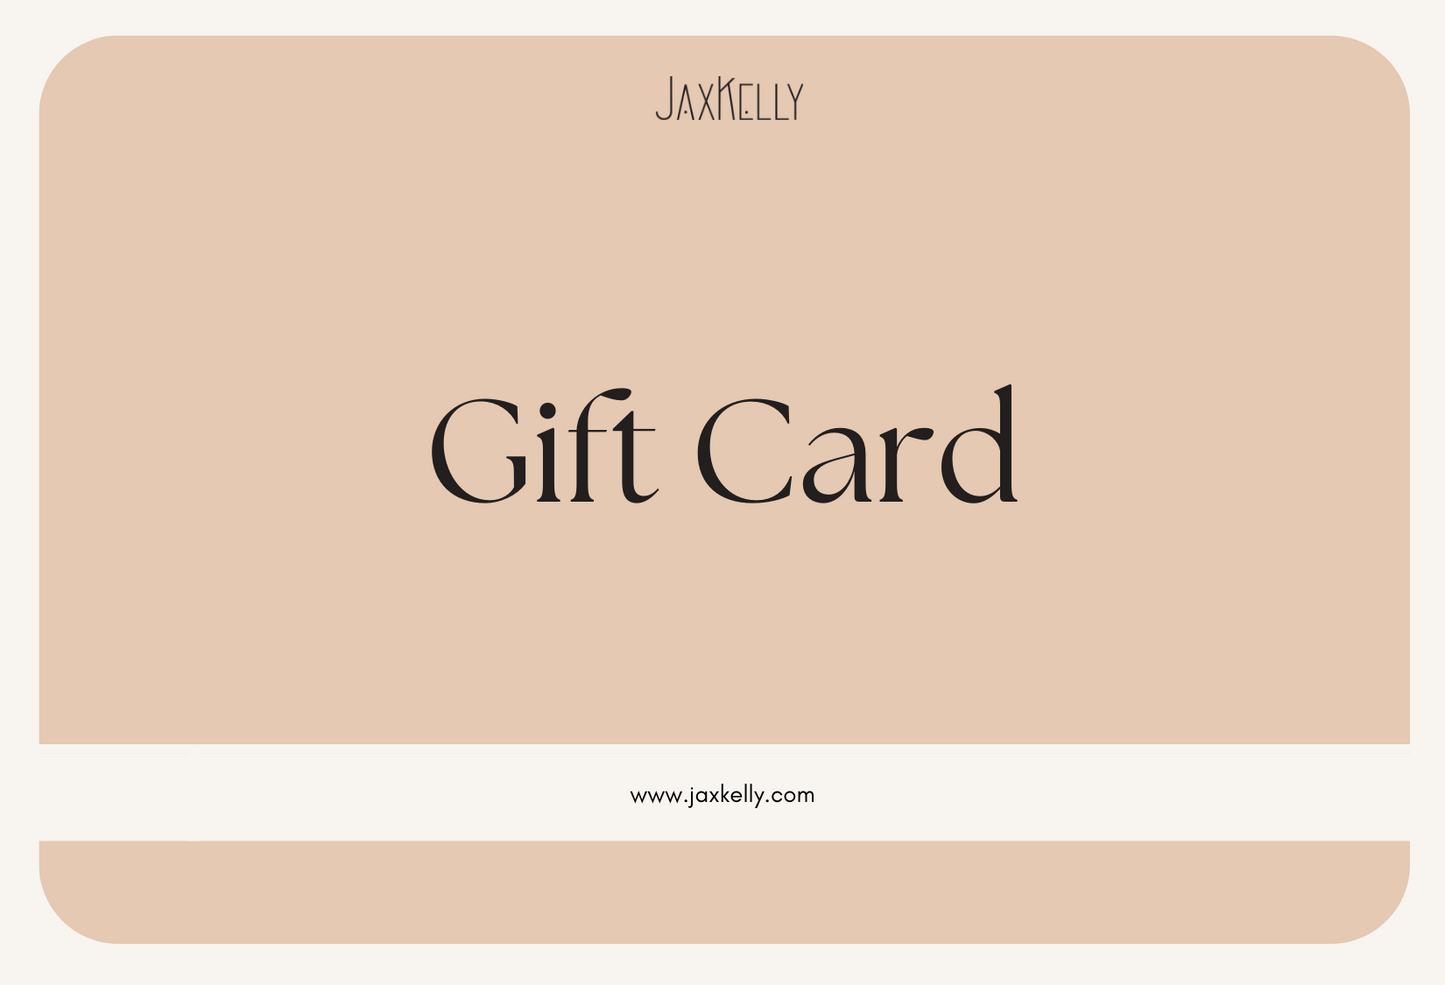 Send an e-Gift Card